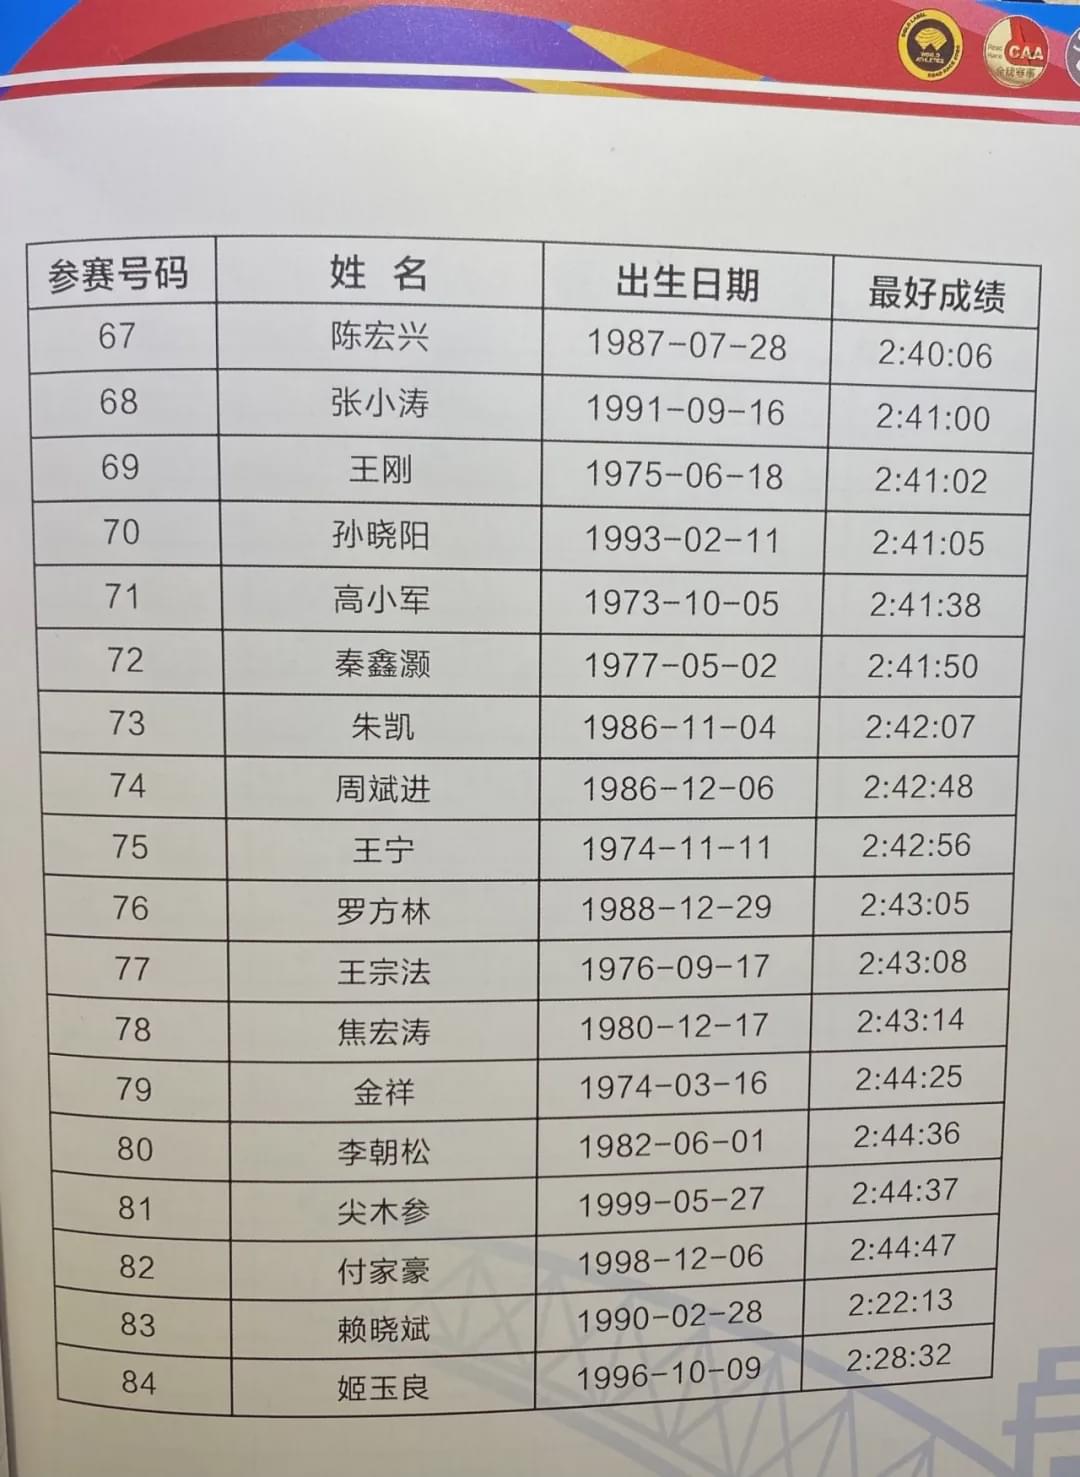 2020太原马拉松鸣枪！杨成祥、姚妙夺男女冠军，均破赛道纪录！(13)